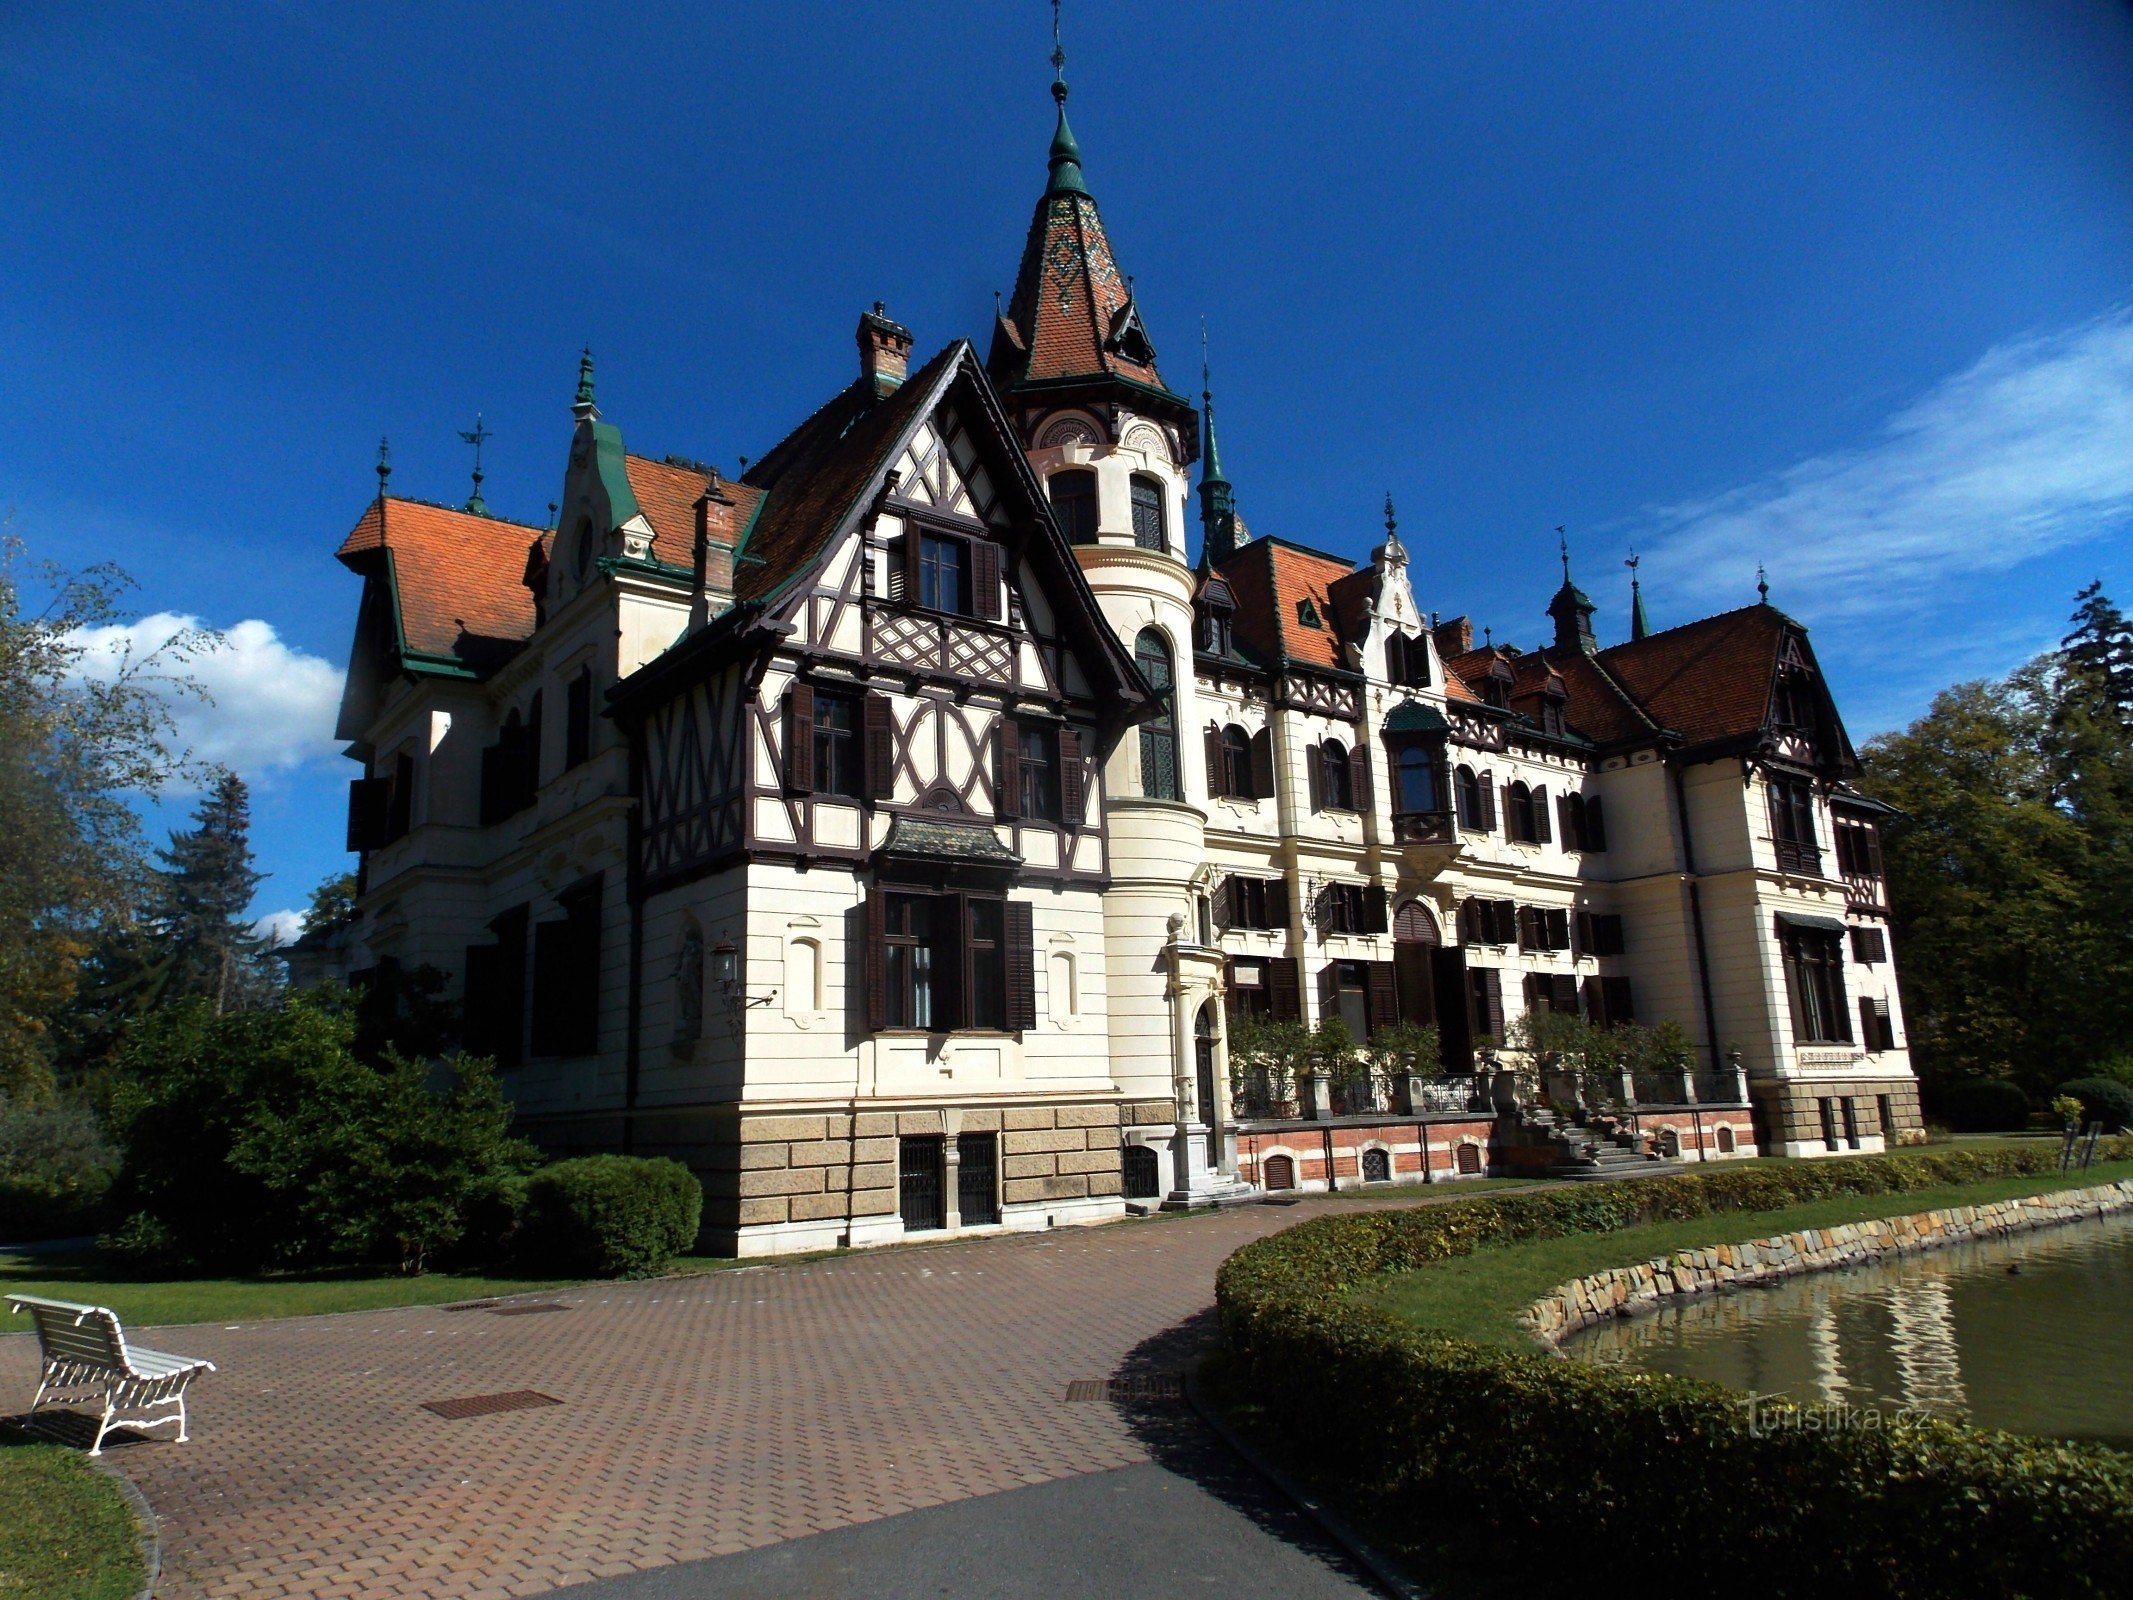 A Zlína melletti Lešná mesebeli kastélyhoz